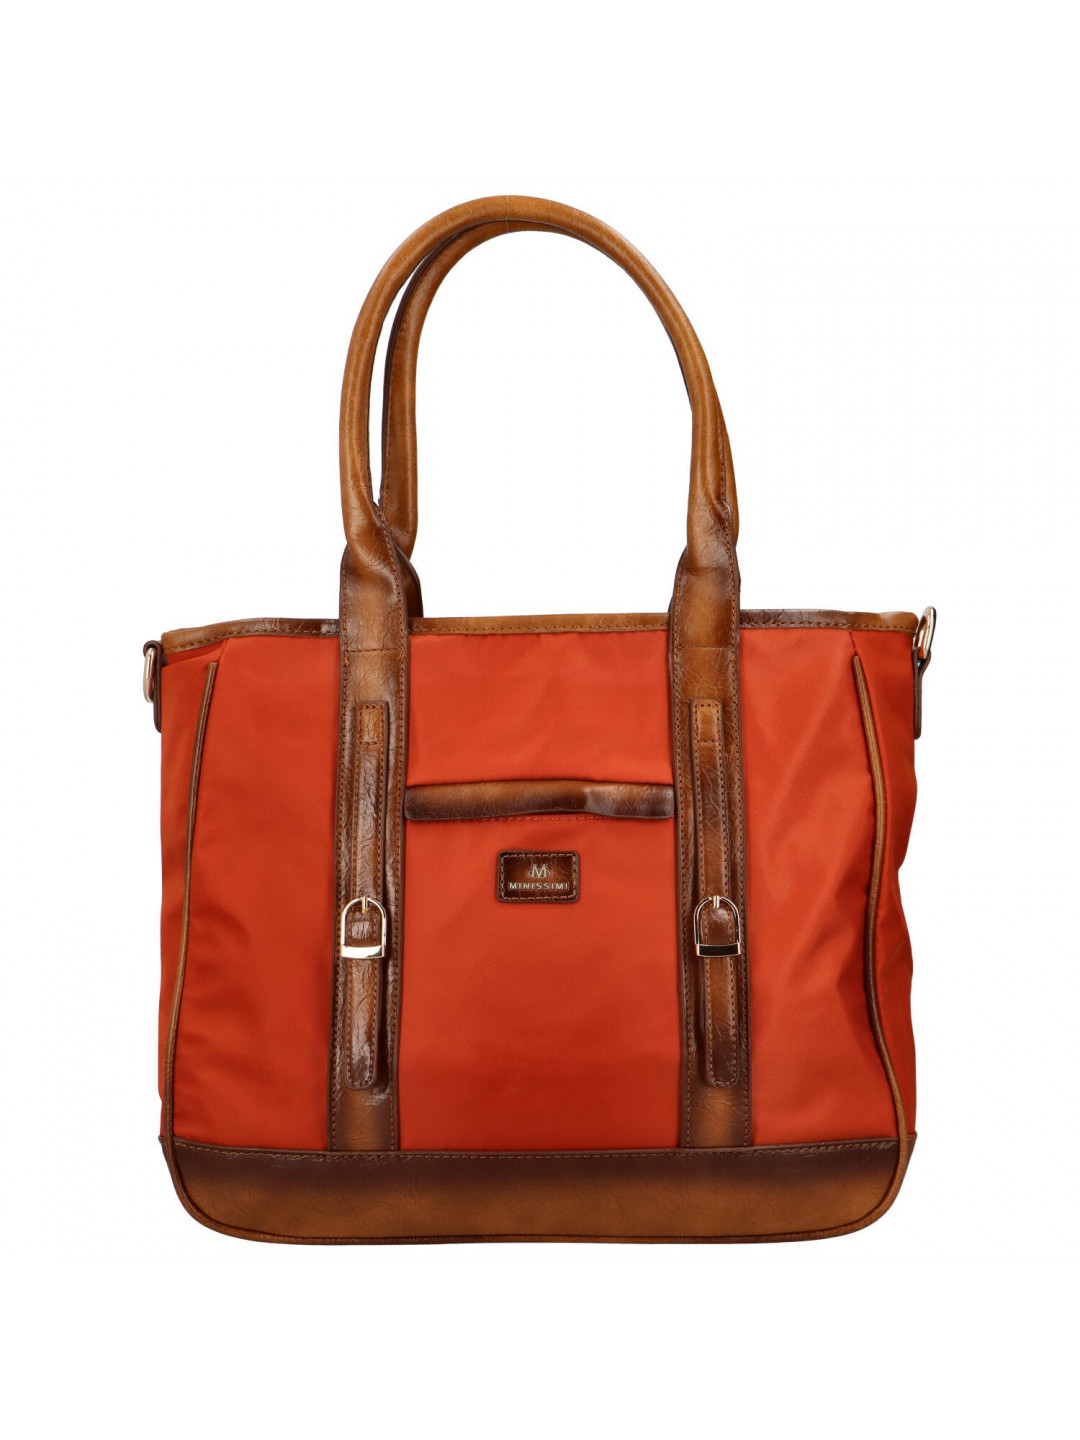 Dámská látková taška s kapsou na přední straně Elda oranžová